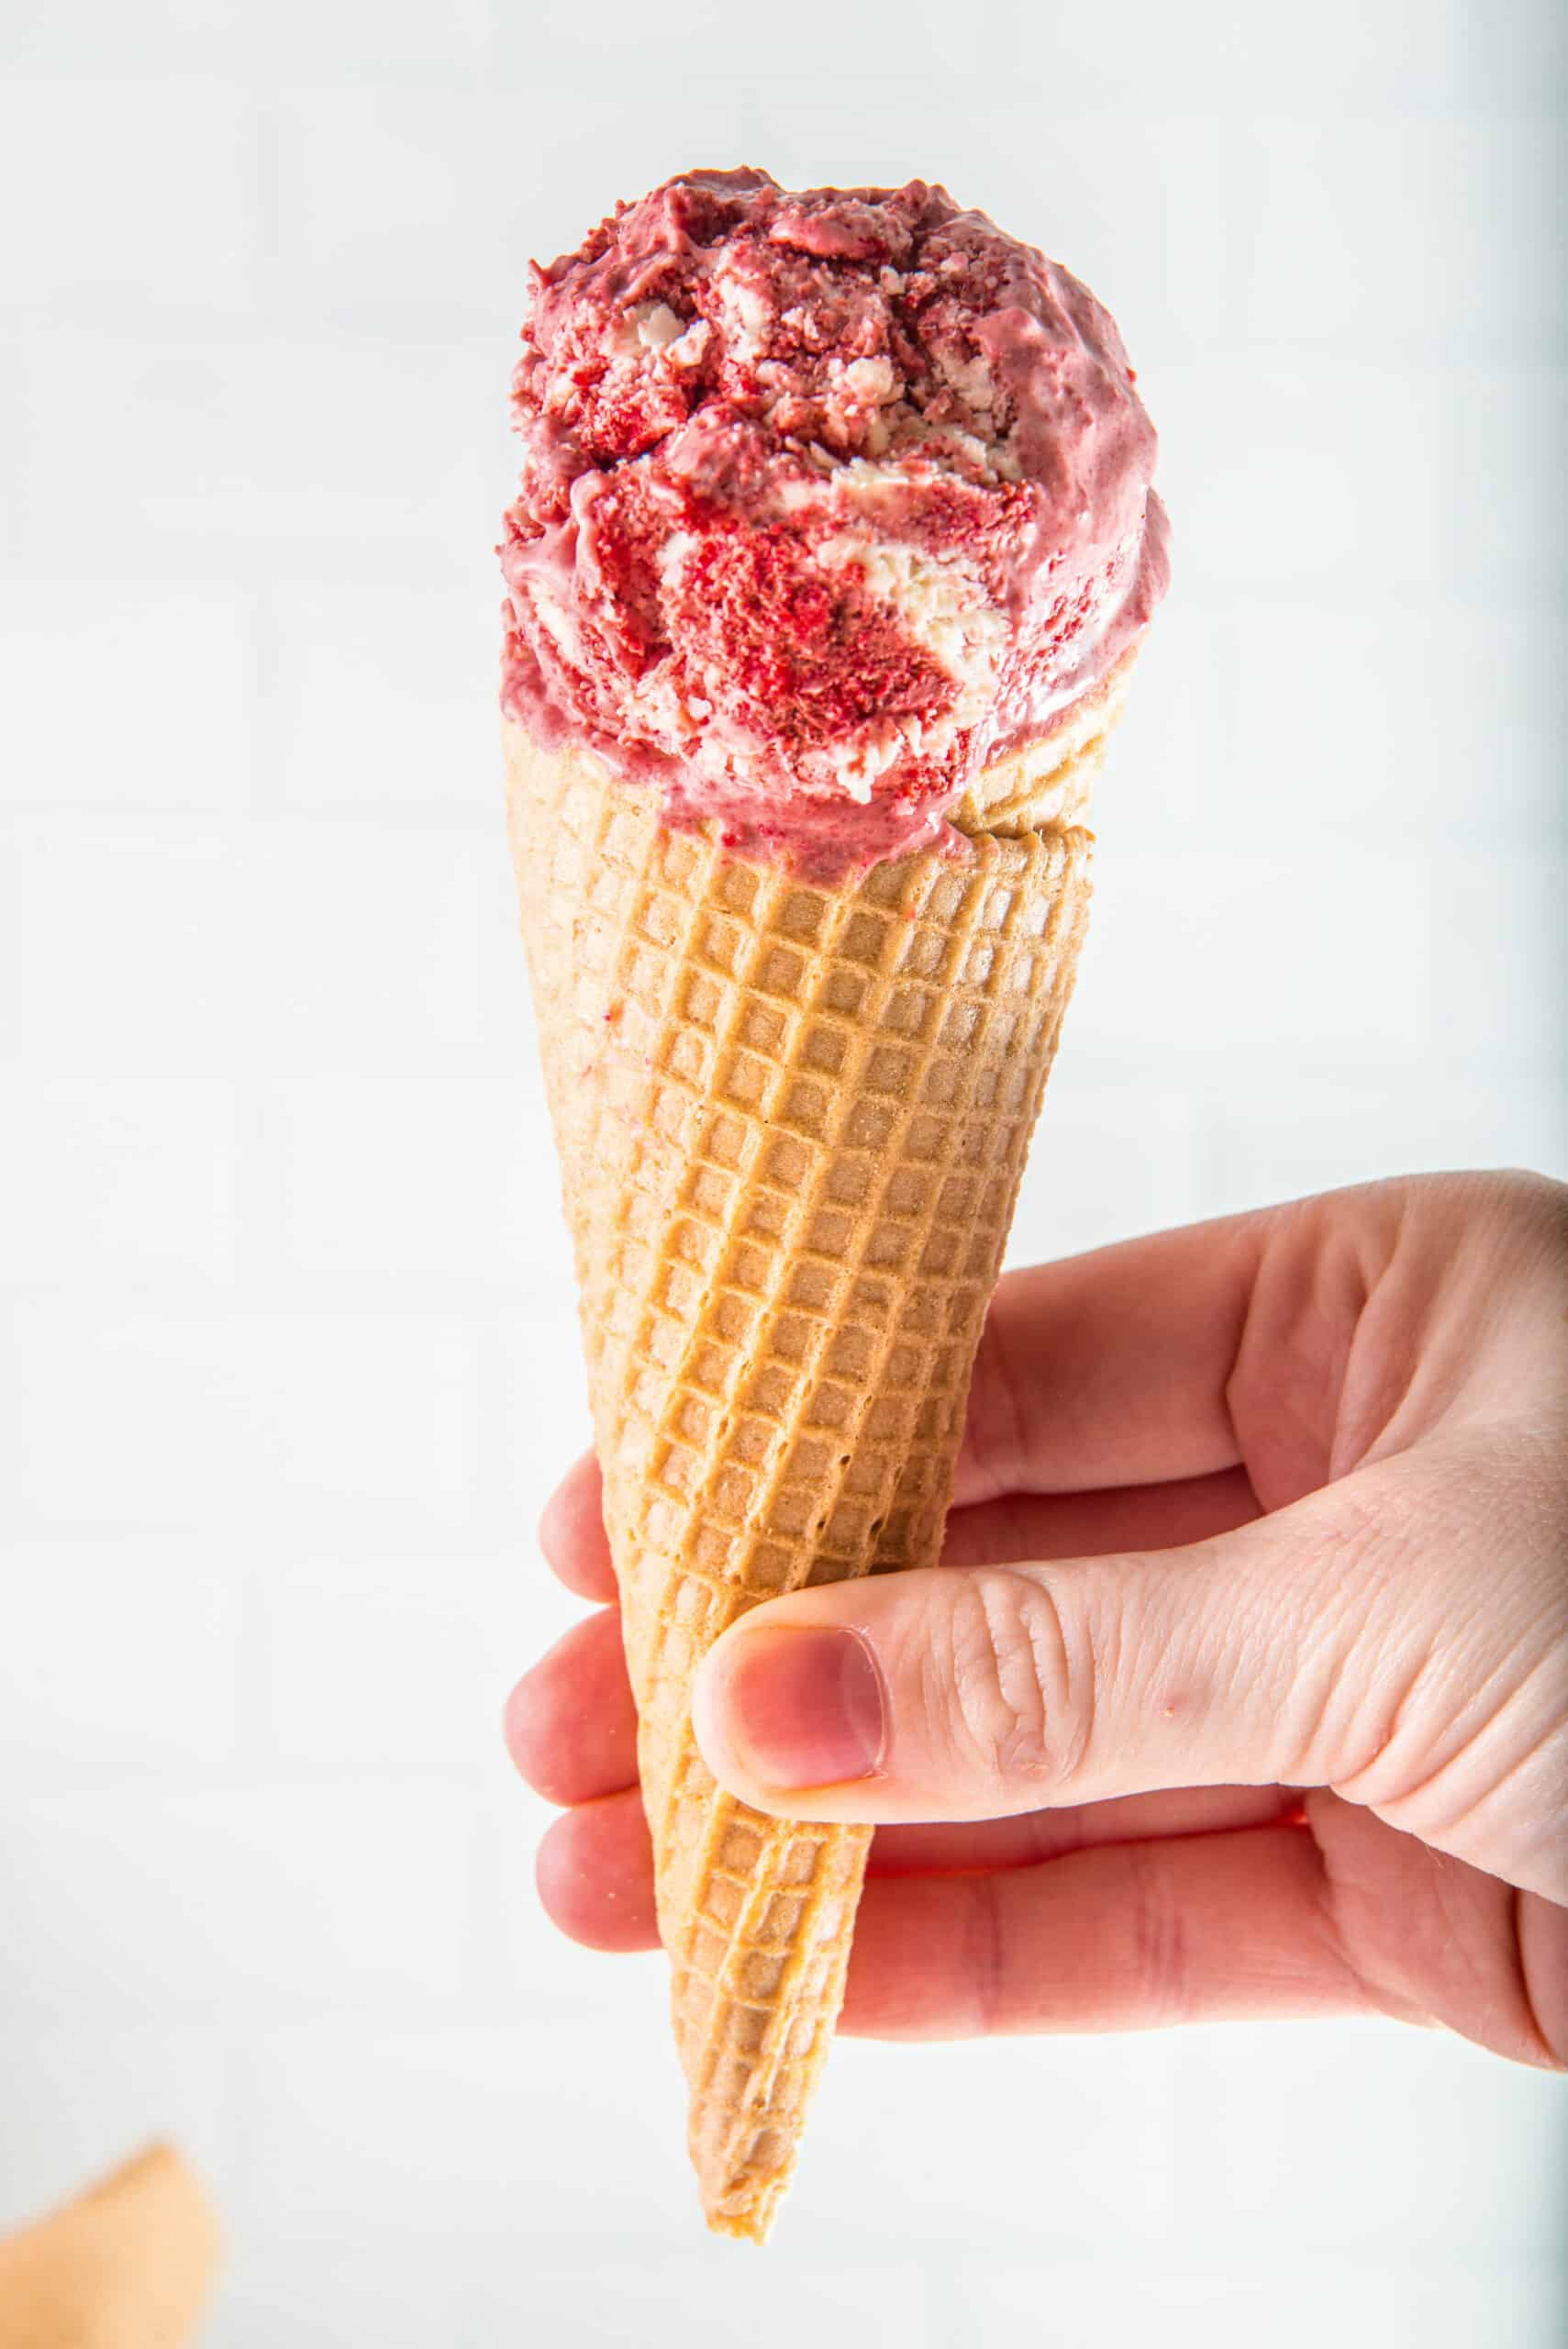 Red Velvet Ice Cream in a cone